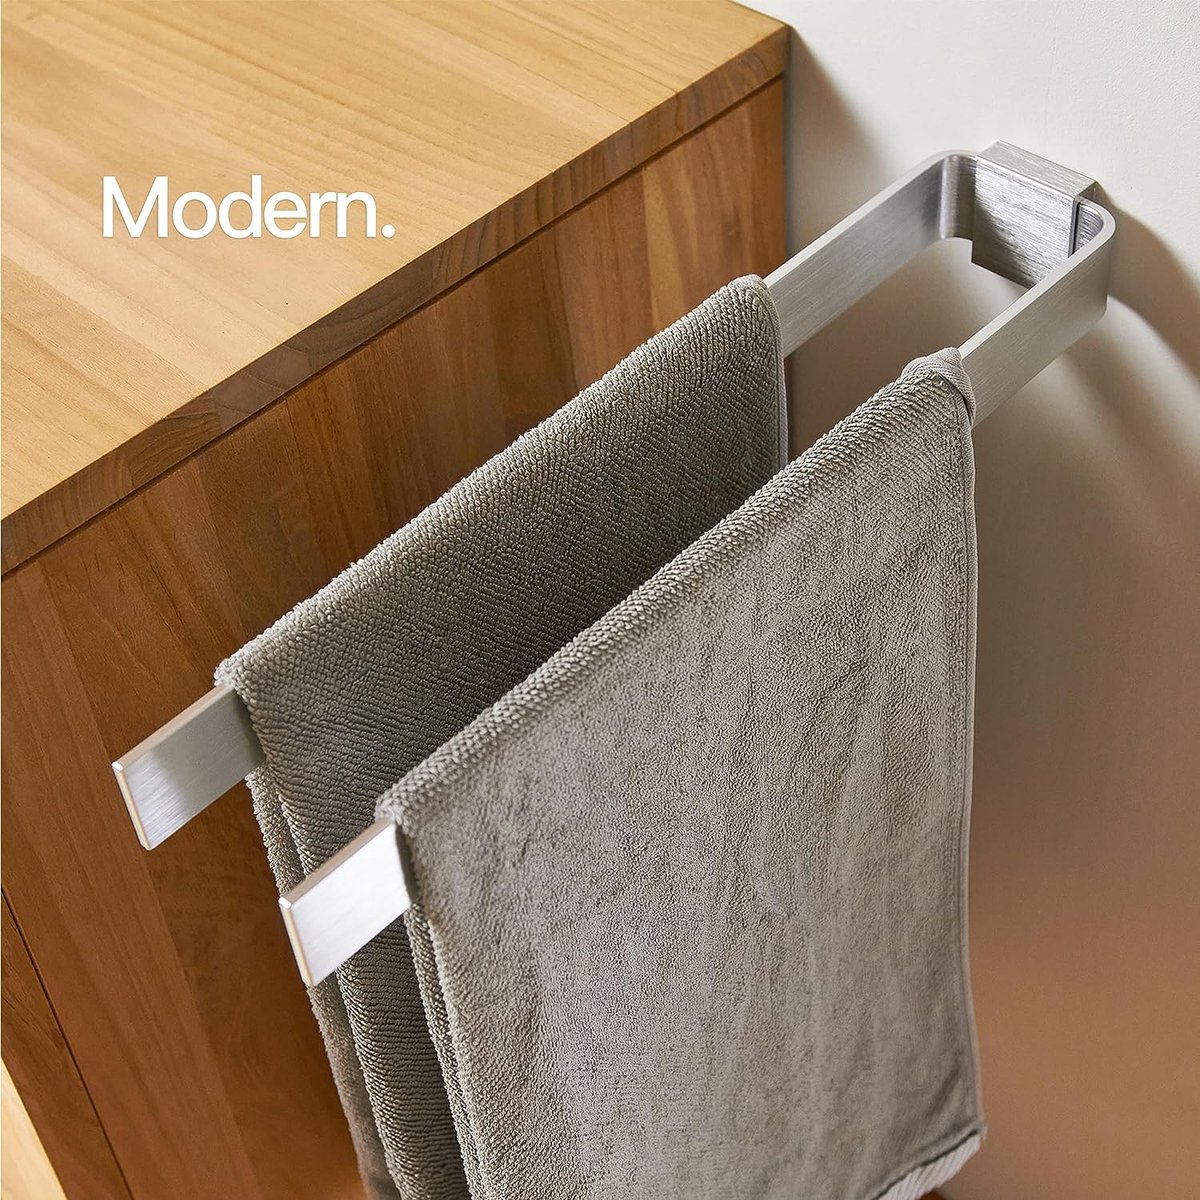 Handdoekhouder Met Twee Stangen | Dubbele Handdoekhouder Voor De Badkamer & Keuken | Elegante Muurbeugel | Muurbeugel Voor Handdoeken | 42cm | Modern Design (zilvergrijs)